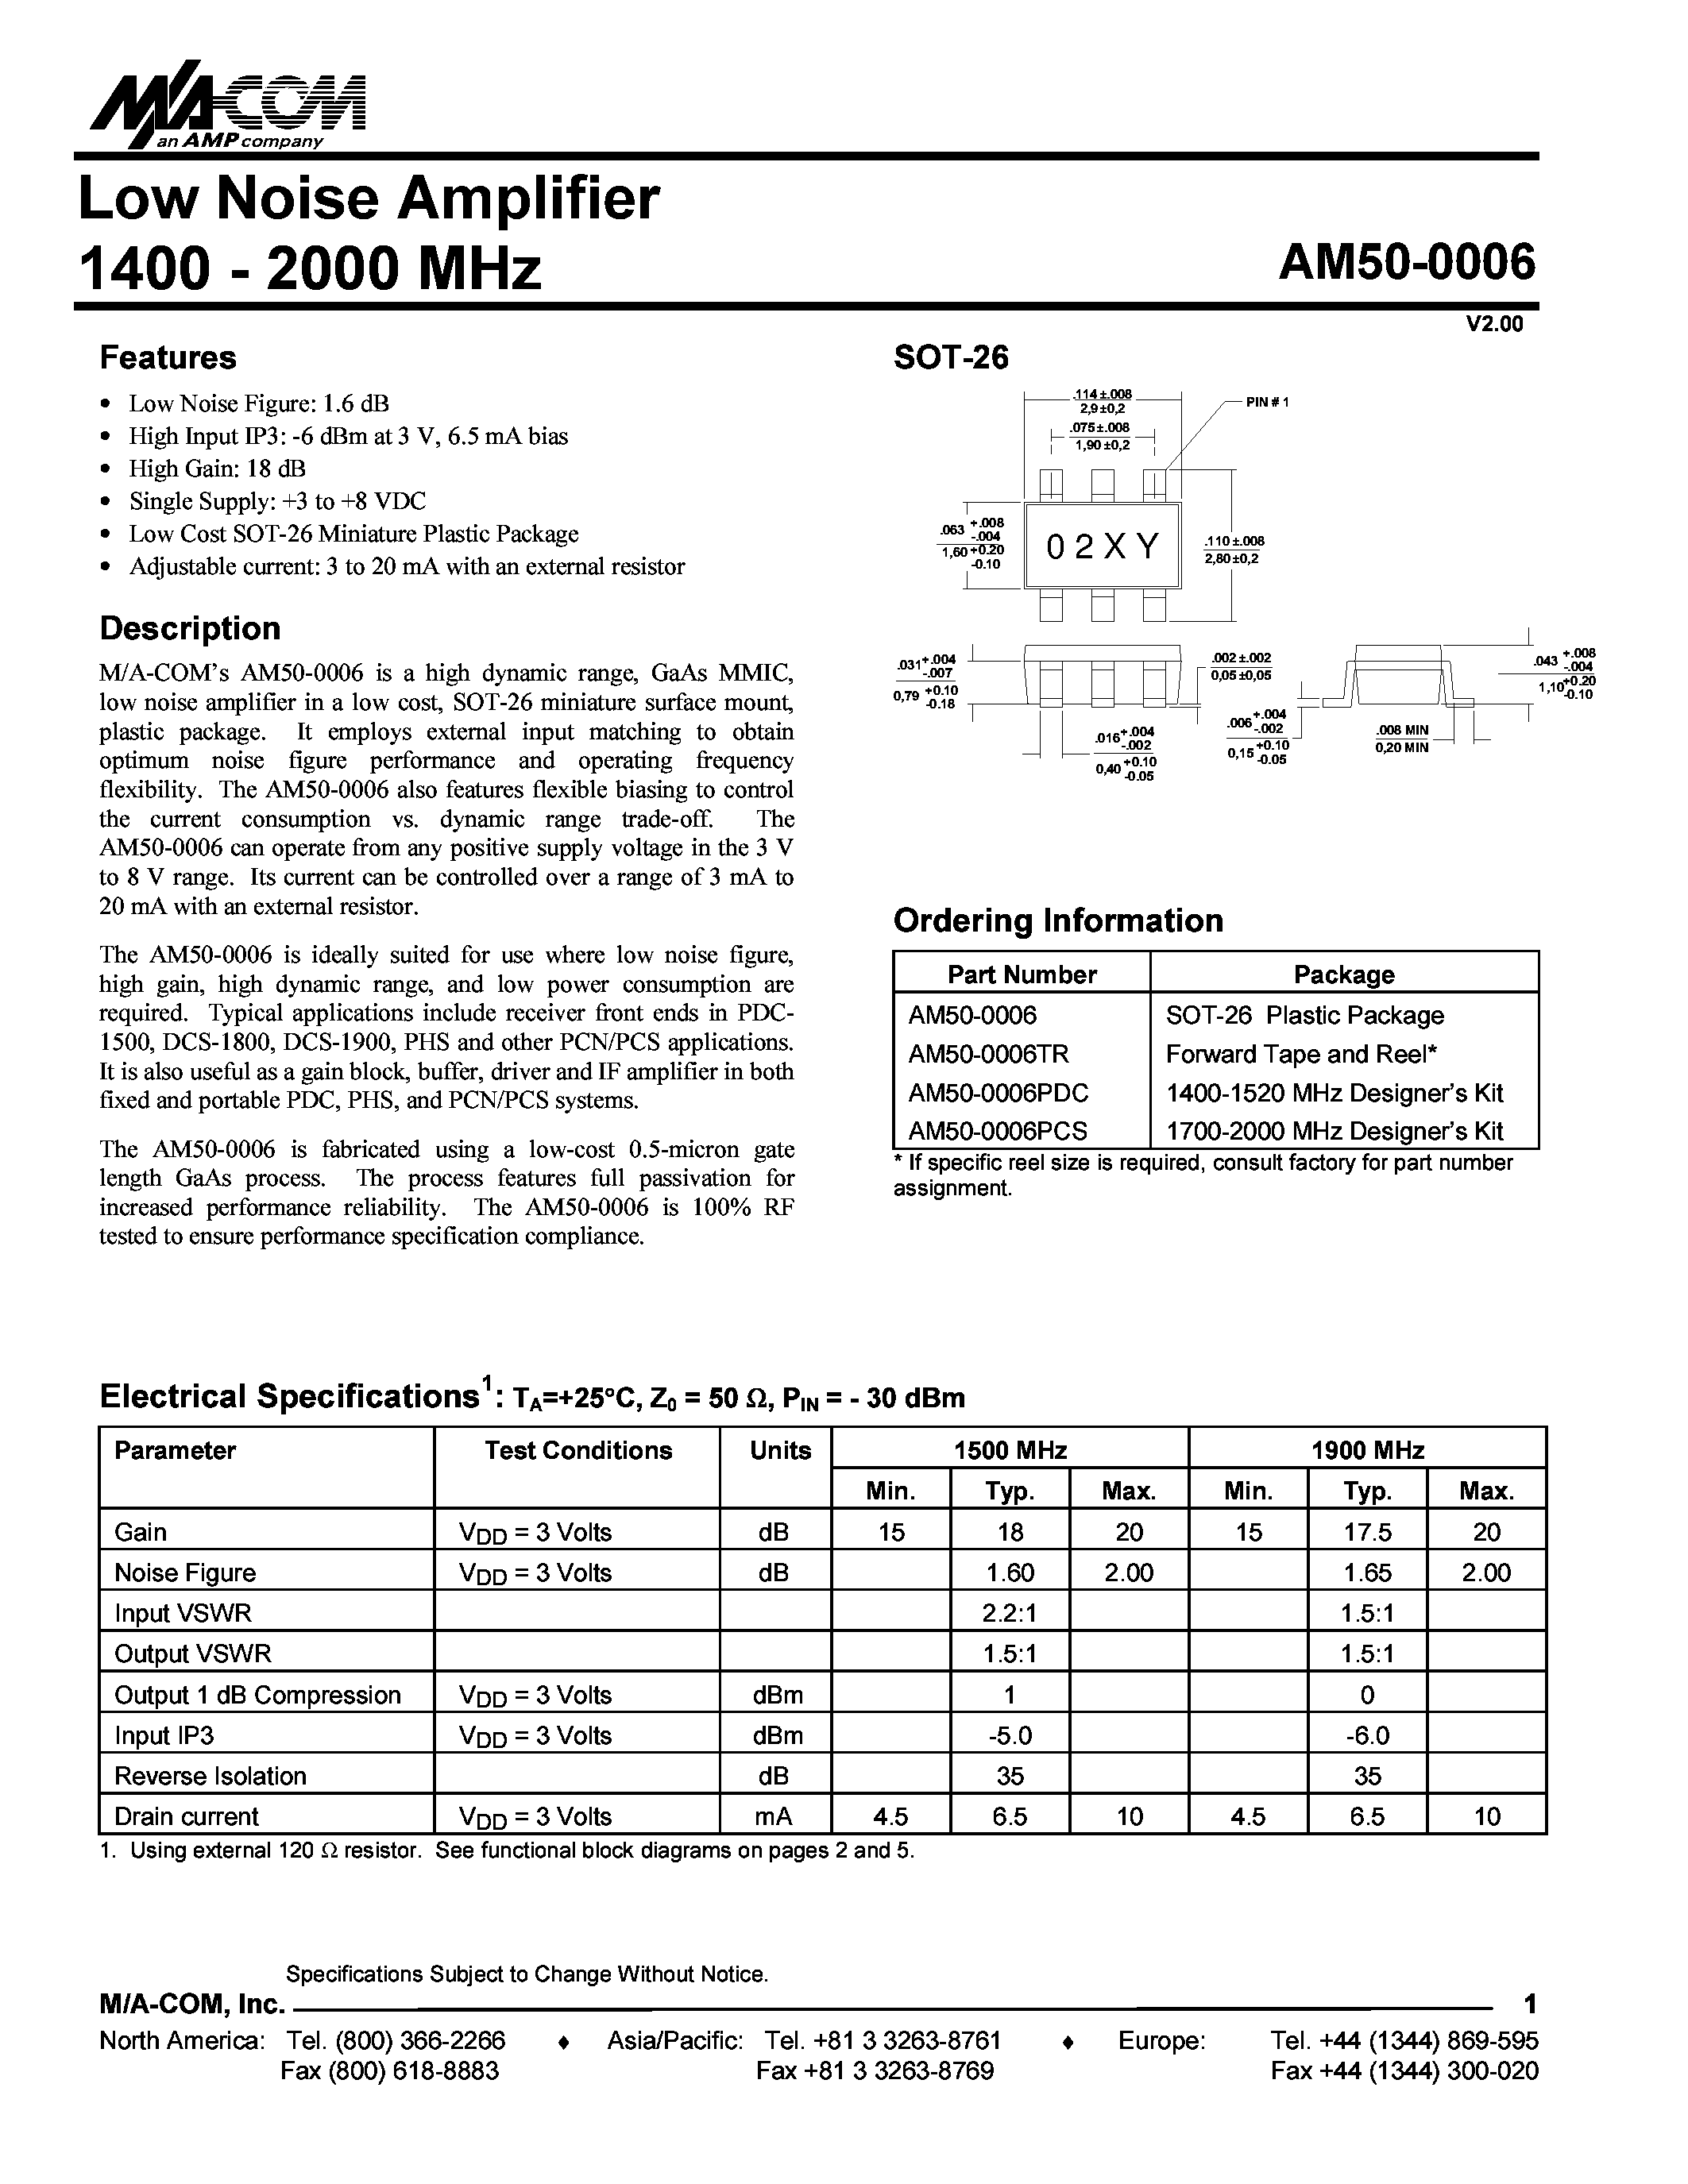 Даташит AM50-0006PCS - Low Noise Amplifier 1400 - 2000 MHz страница 1